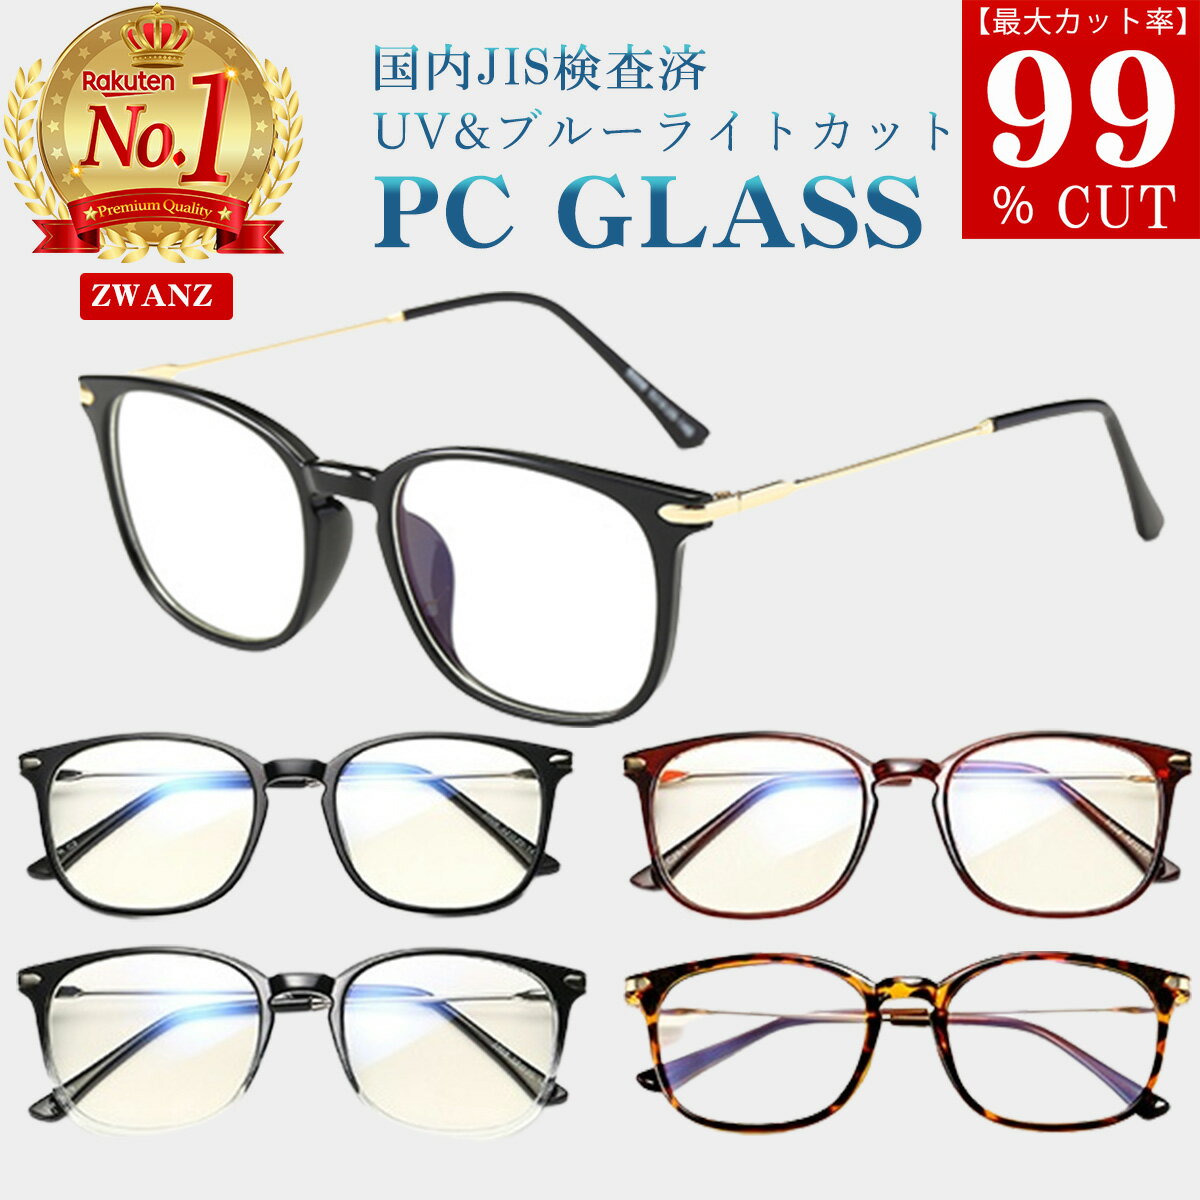 93％以上節約 レディース メンズ UV400 度なし 柔らかフレーム UVカット 眼鏡 おしゃれ PCメガネ ブルーライトカット zwanz 超軽量 伊達メガネ 眼鏡・サングラス